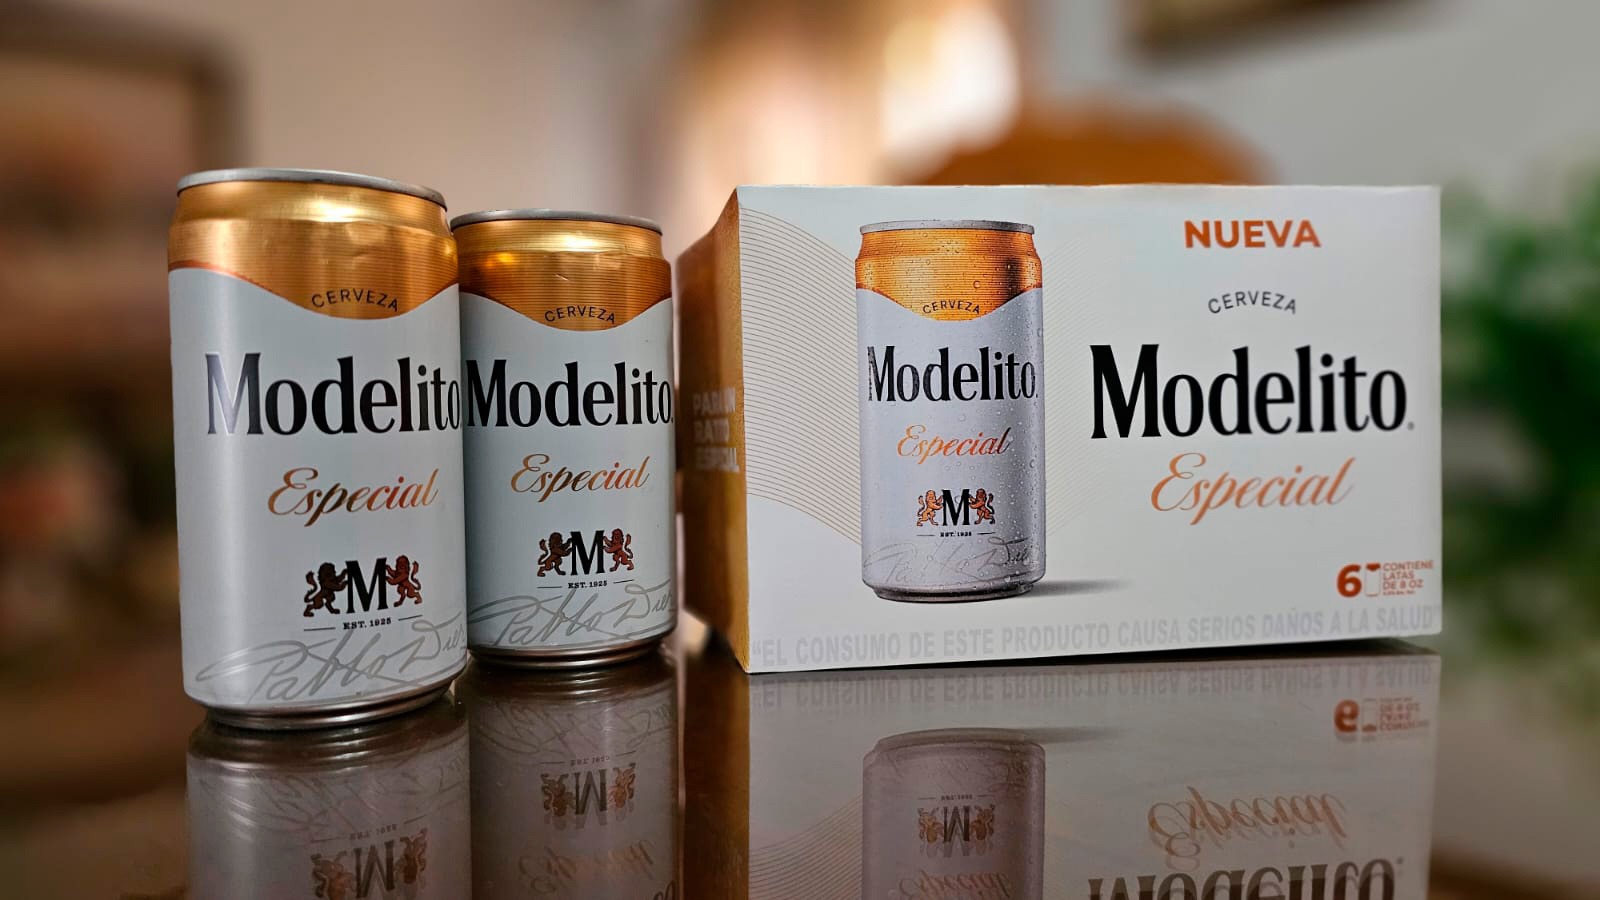 Cerveza Modelo lanza al mercado la nueva Modelito - Periódico Digital  Centroamericano y del Caribe